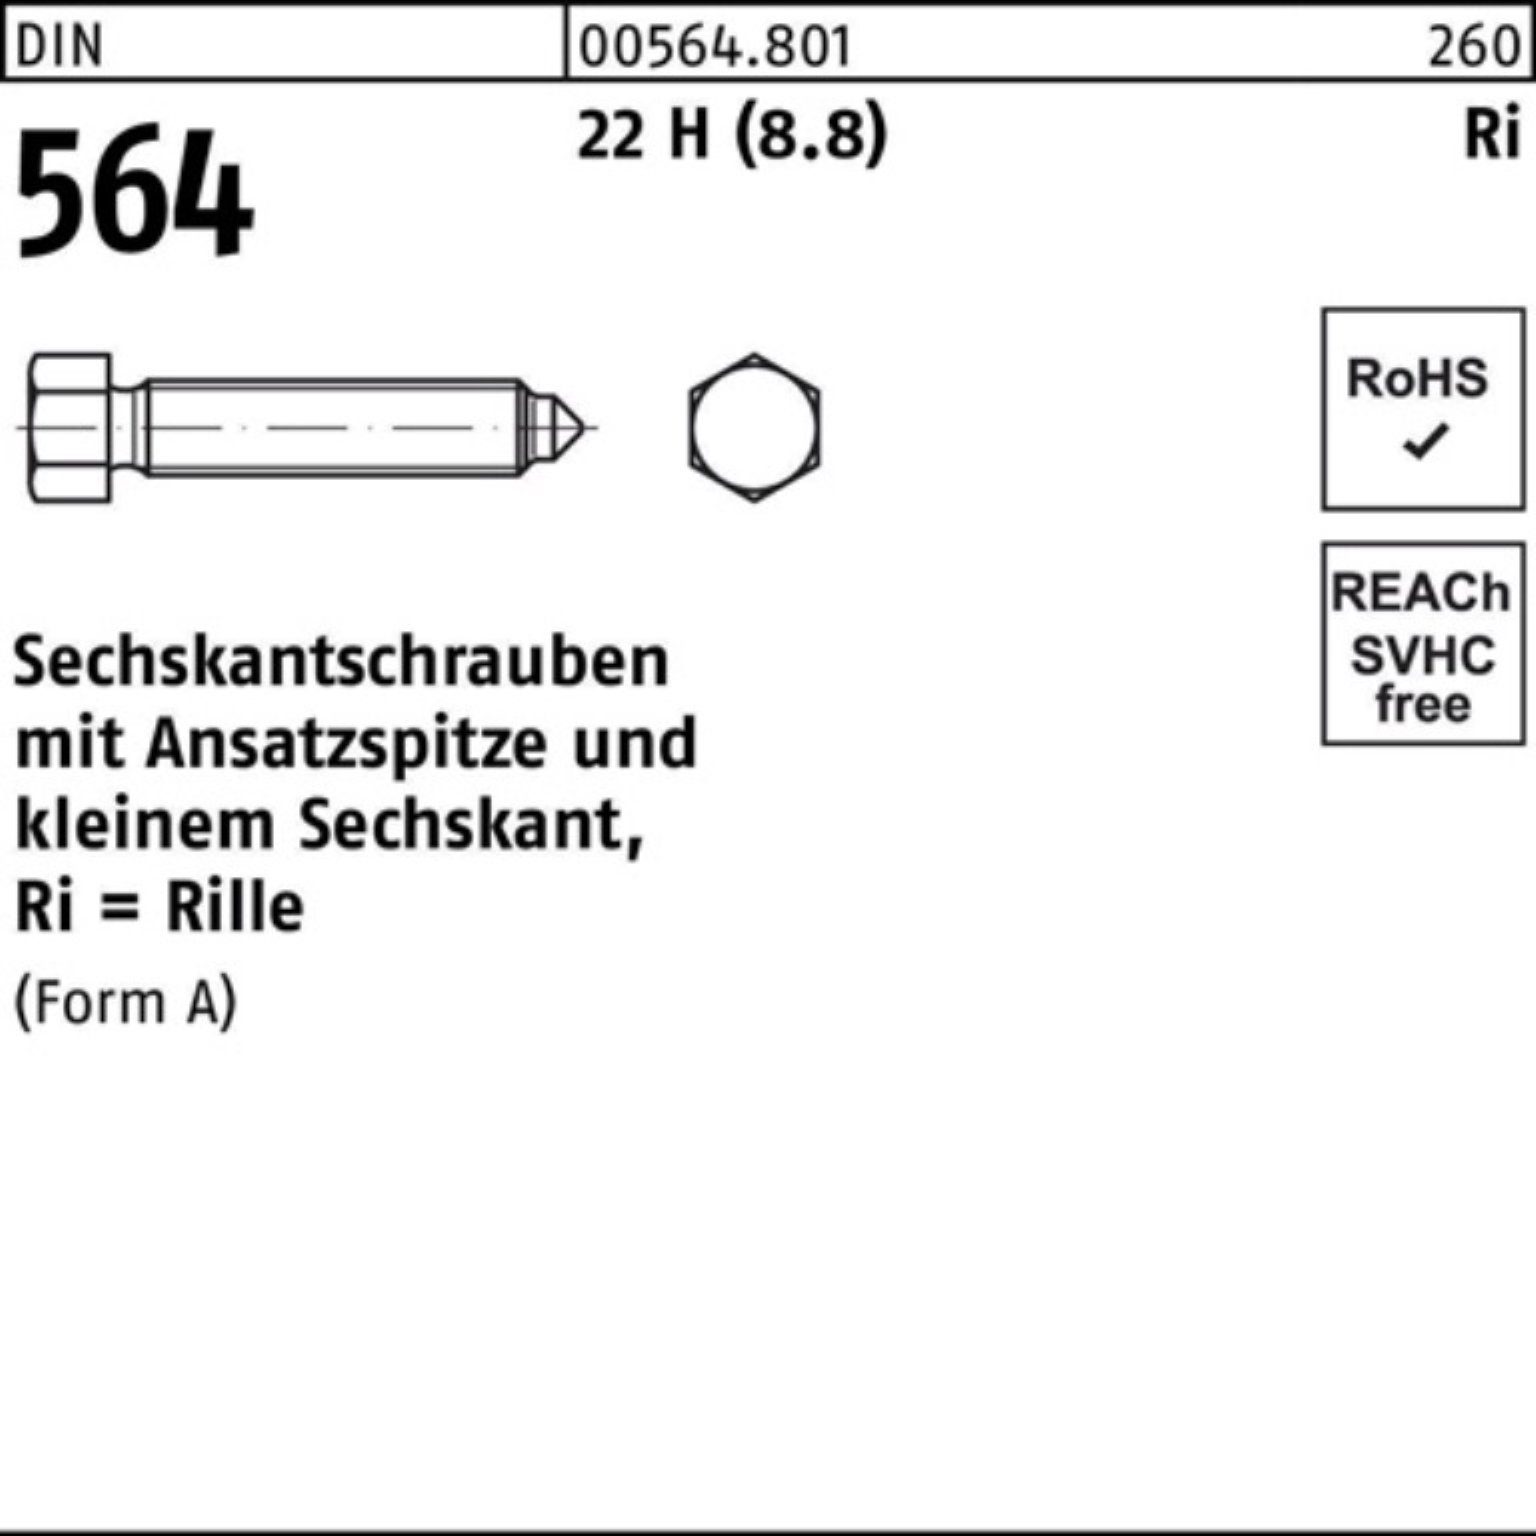 22 Sechskantschraube Sechskantschraube (8.8) 30 H Ansatzspitze AM 564 Pack 8x Reyher 100er DIN